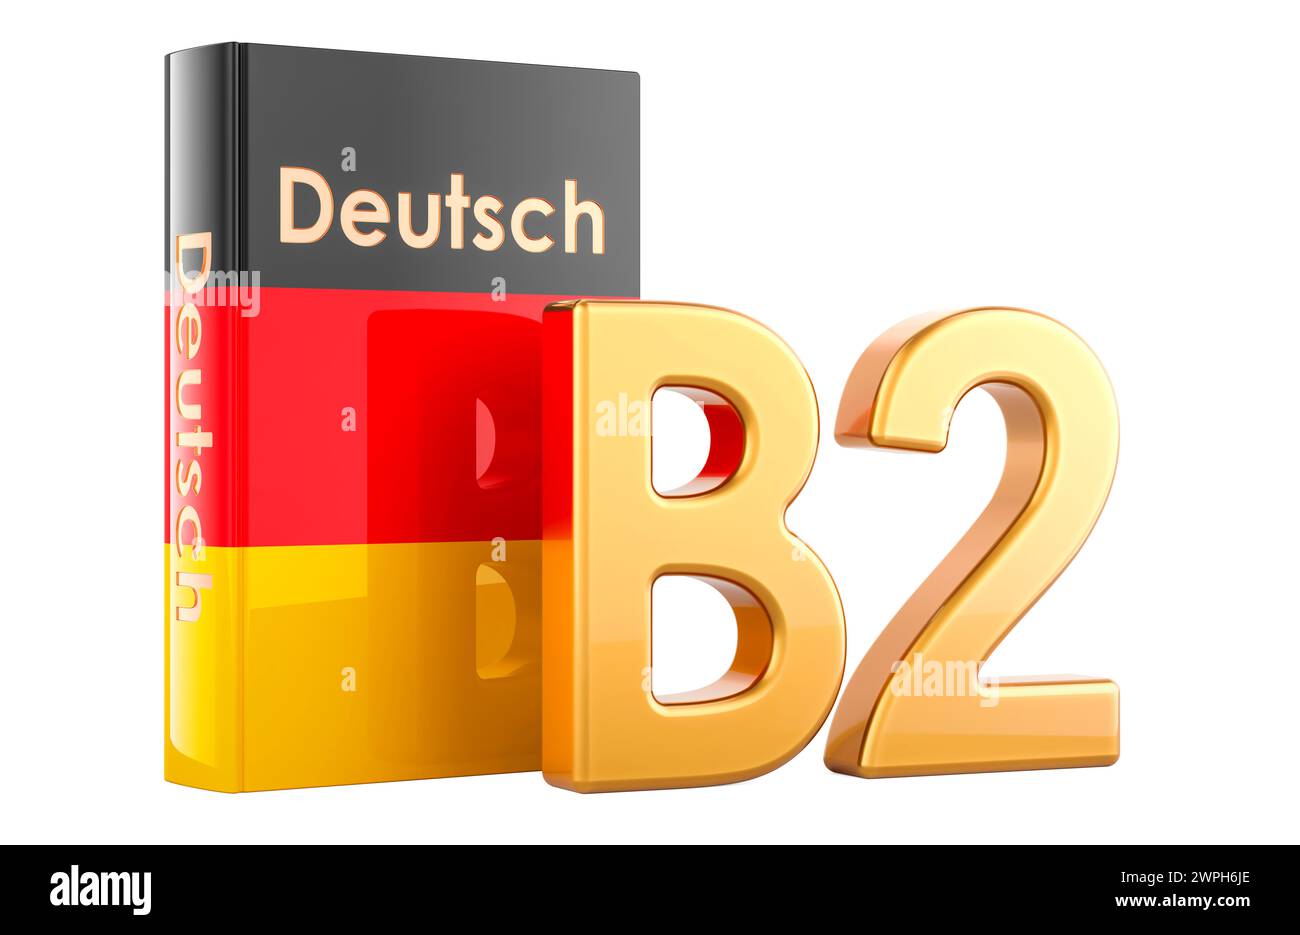 B2 livello tedesco, concetto. Livello intermedio superiore, rendering 3D isolato su sfondo bianco Foto Stock